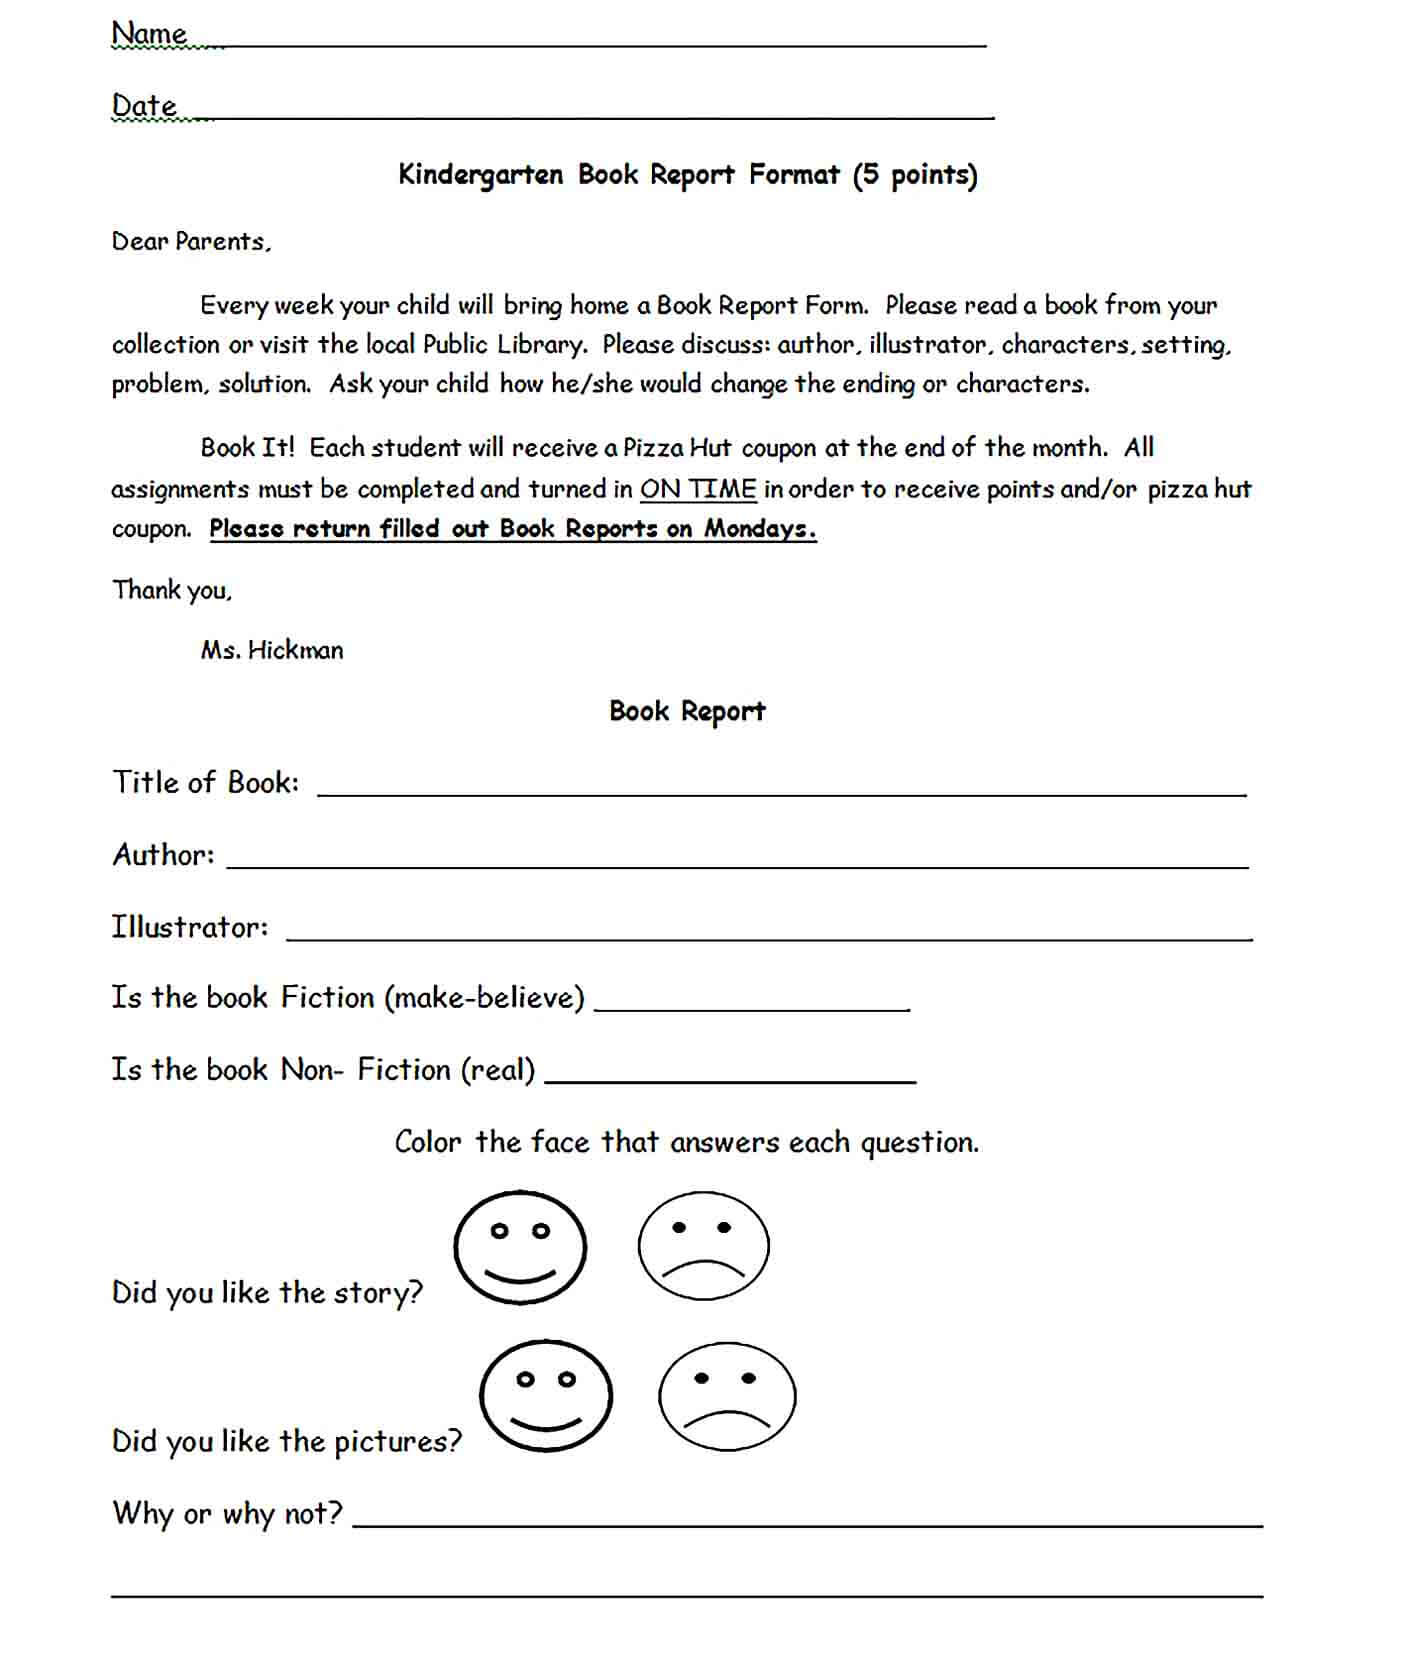 Sample Kindergarten Book Report